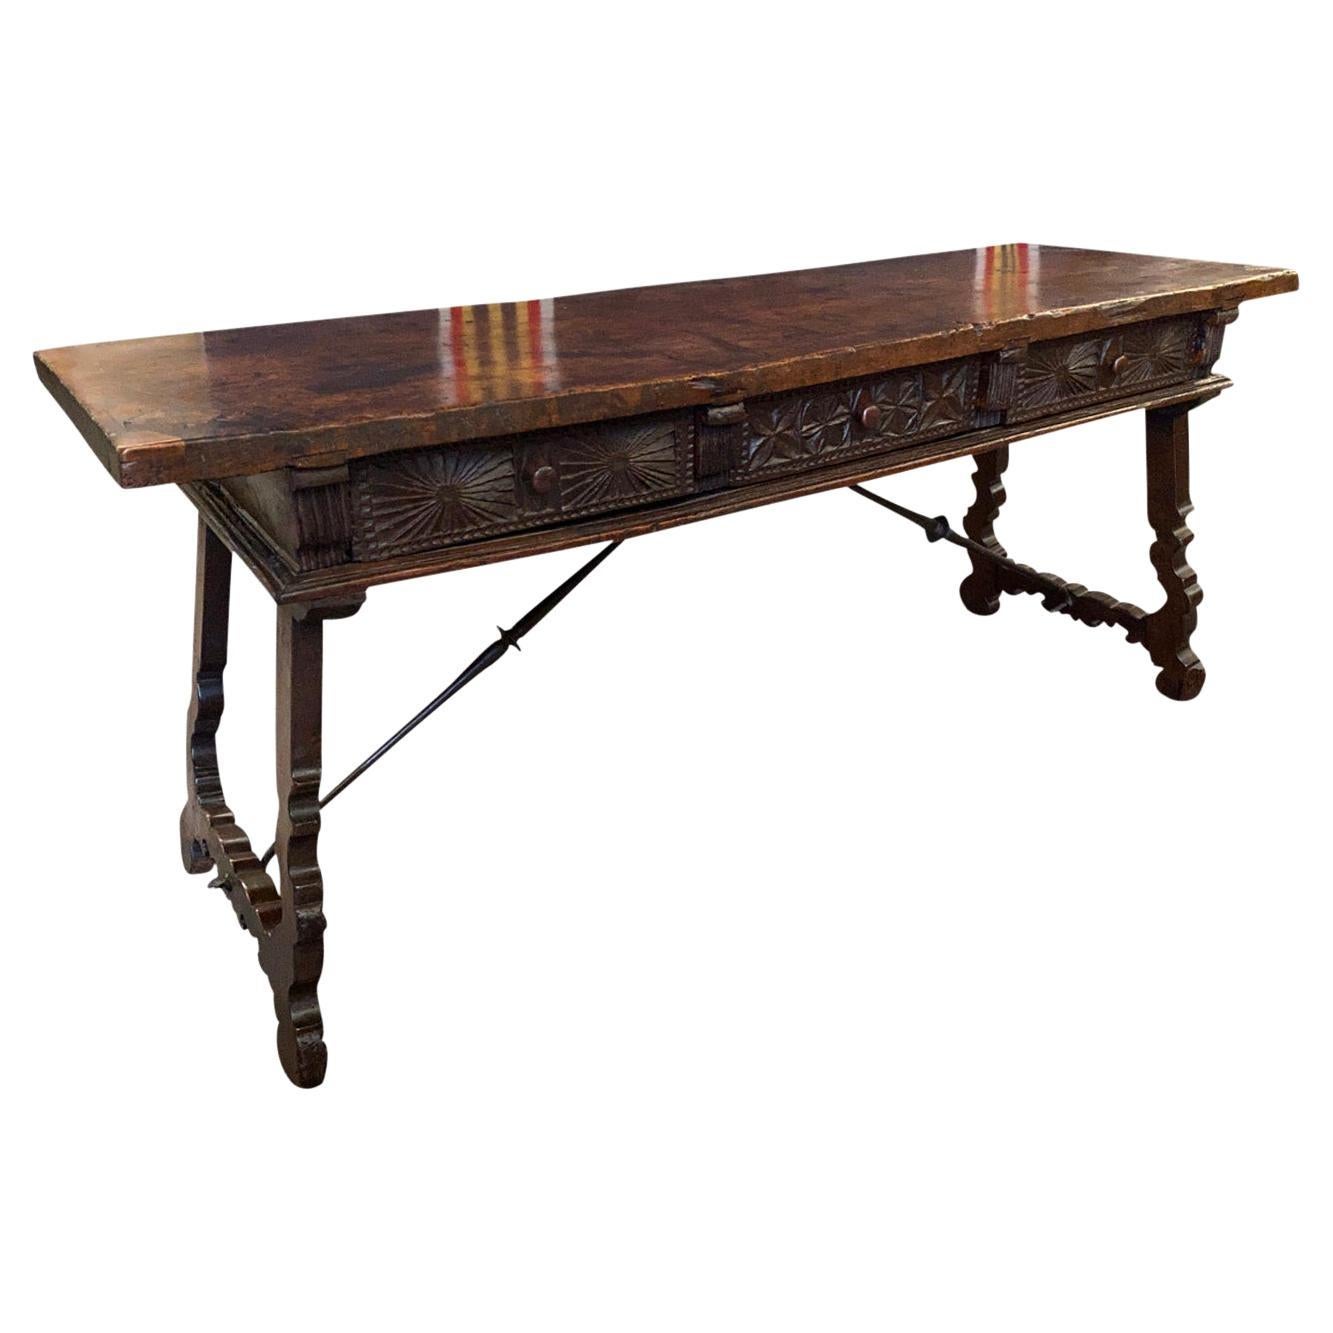 Spanischer Reflectoire-Tisch aus dem 17. Jahrhundert